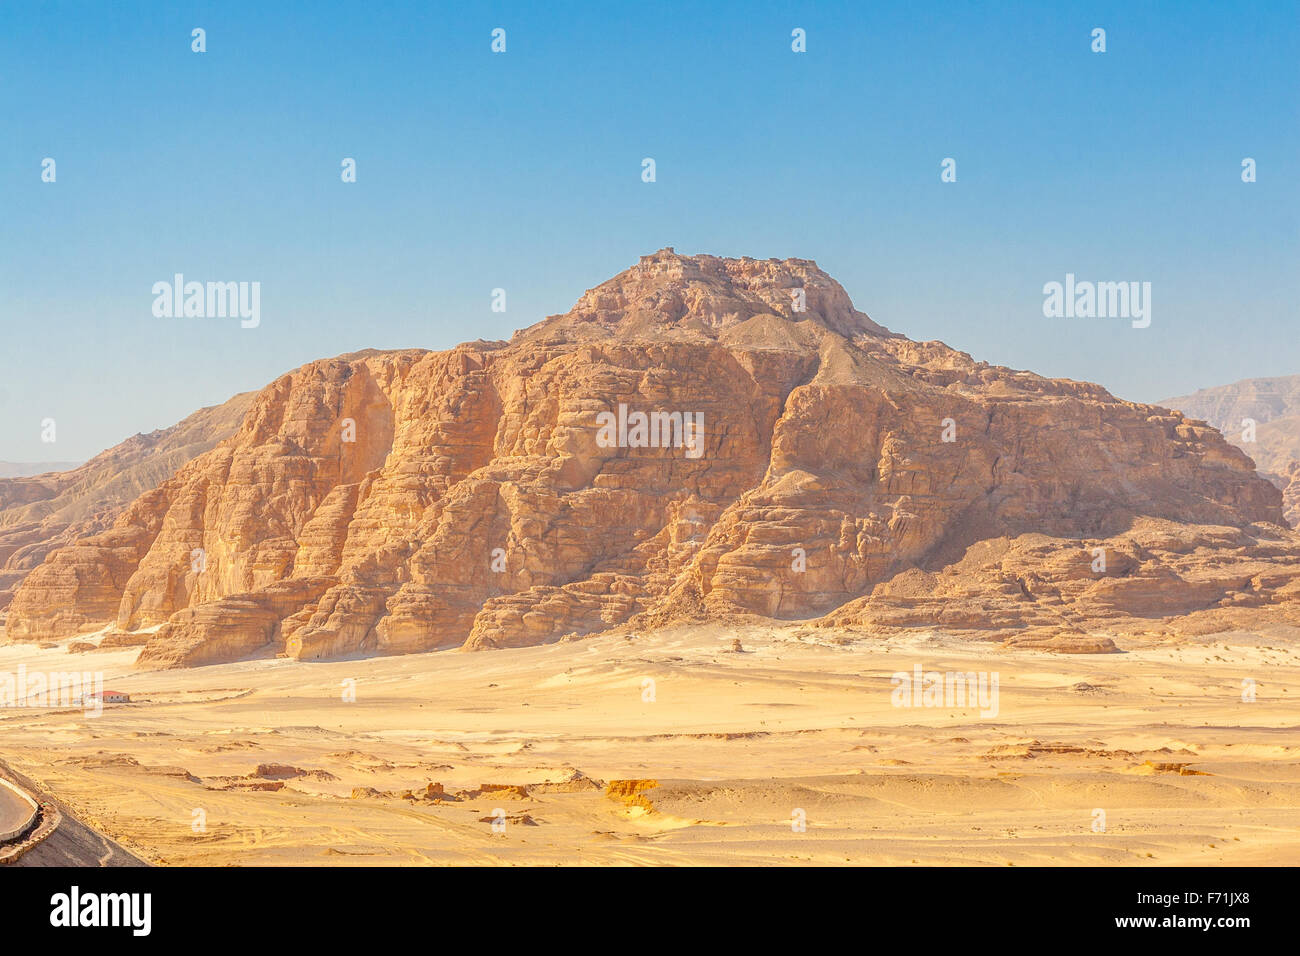 Dahab, Sinai Peninsula, Egypt, Road and Mountains in the Sinai desert Stock Photo